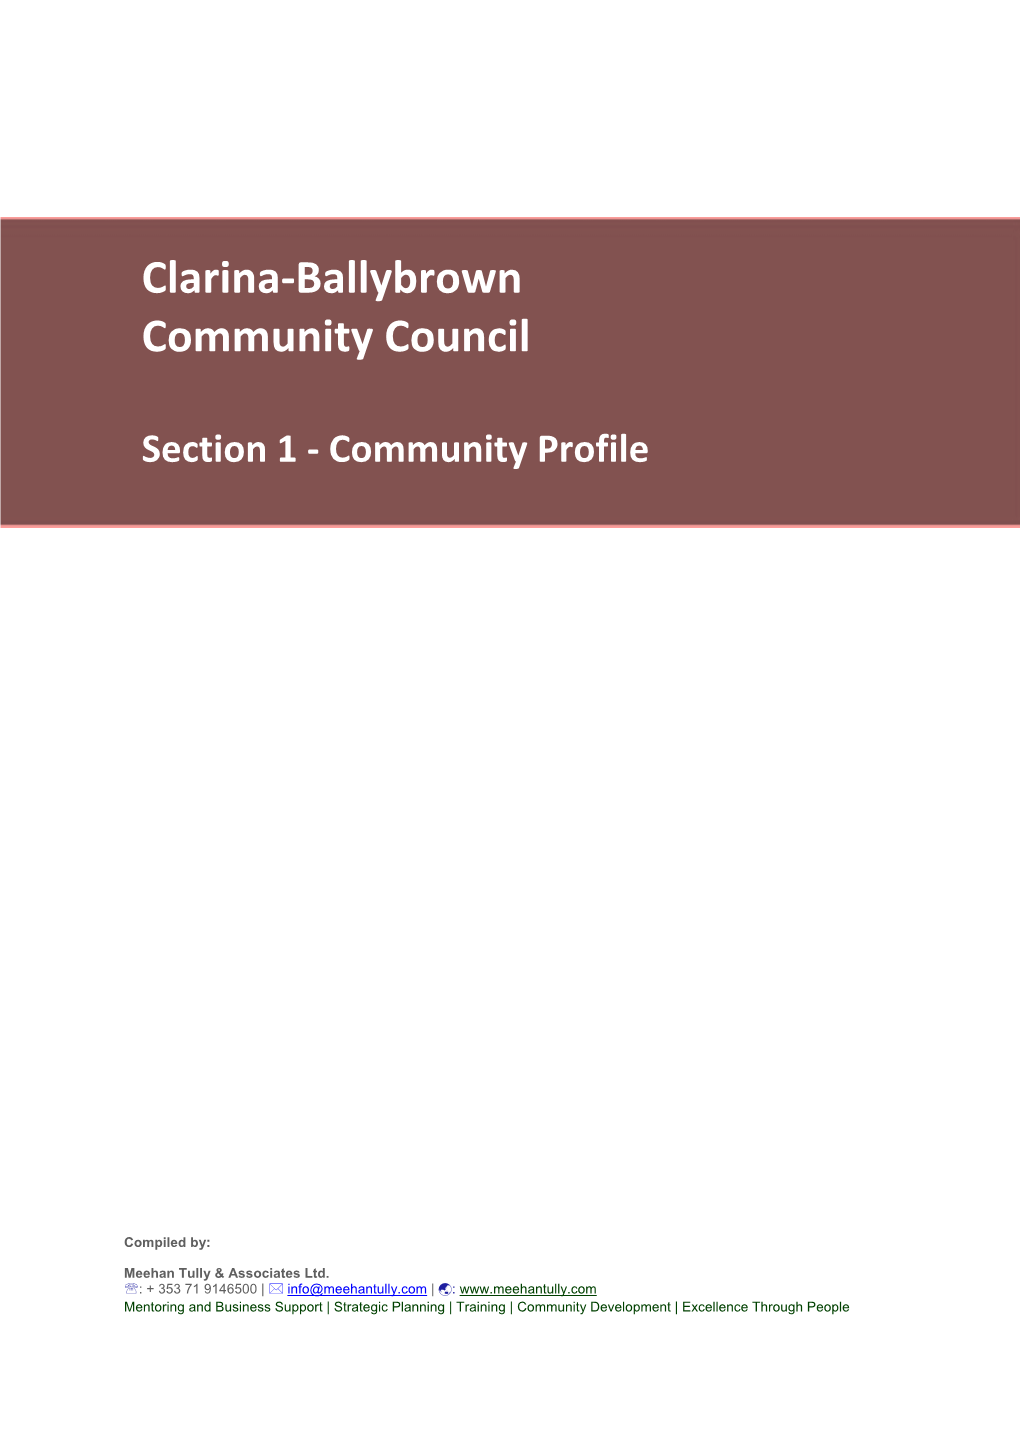 Clarina-Ballybrown Community Council